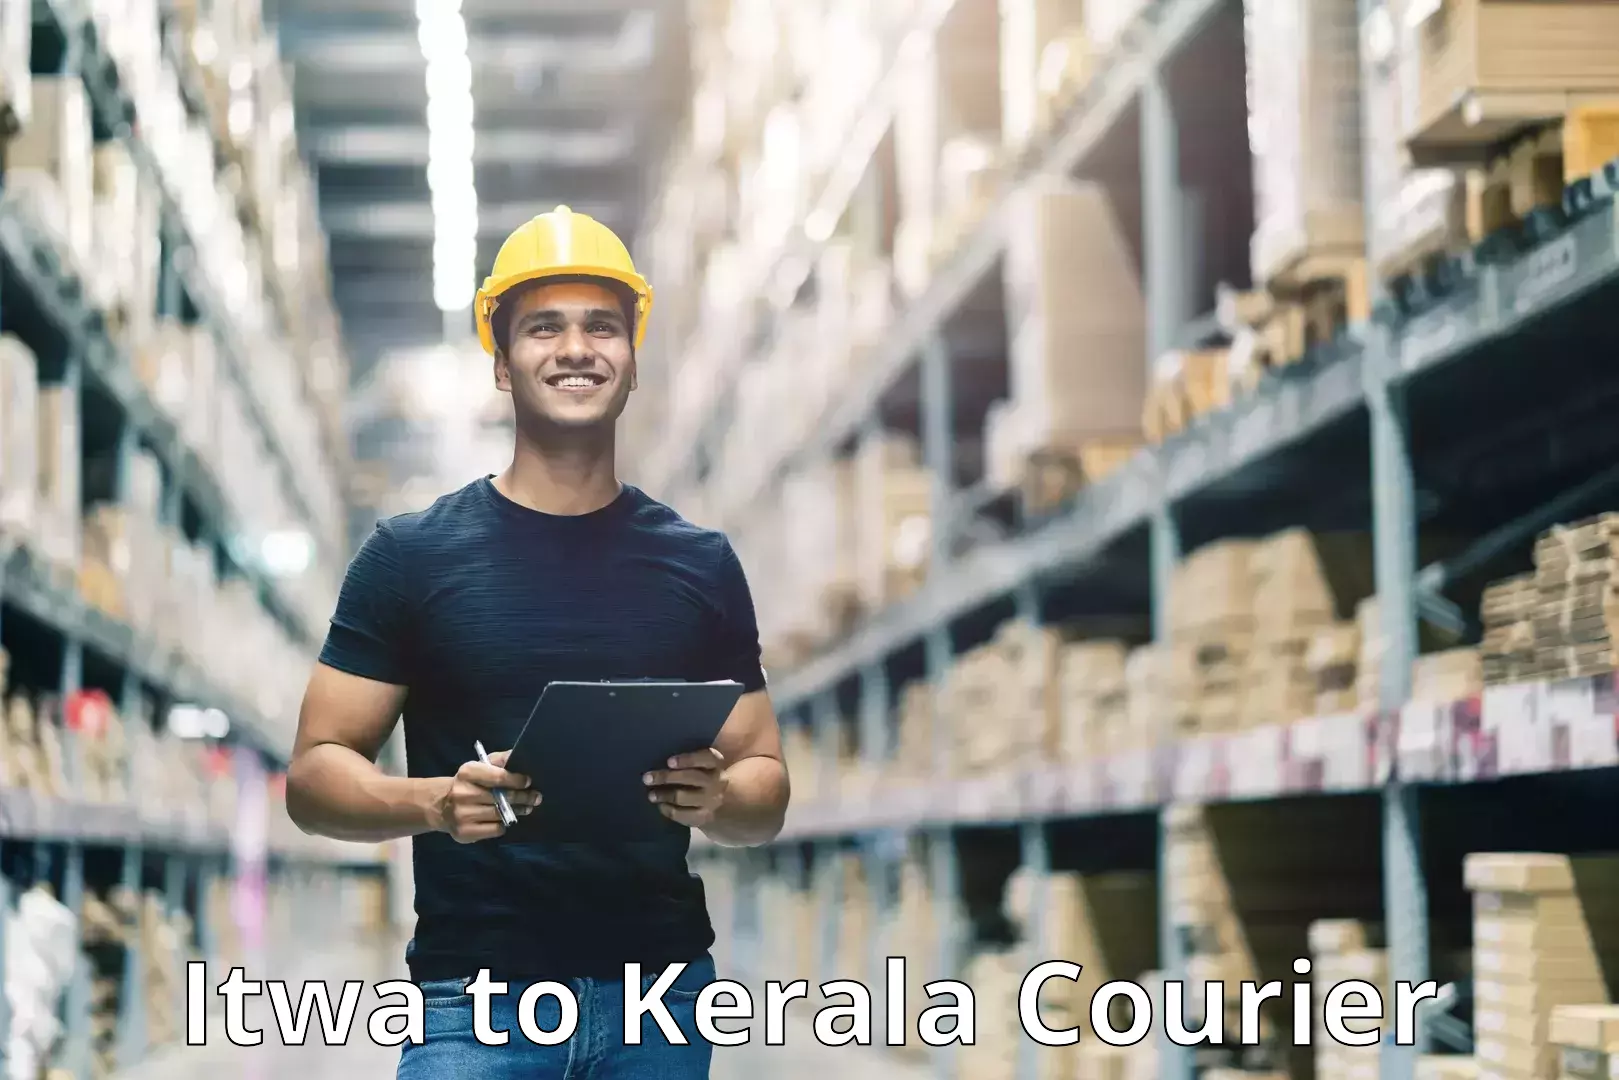 Smart shipping technology Itwa to Kerala